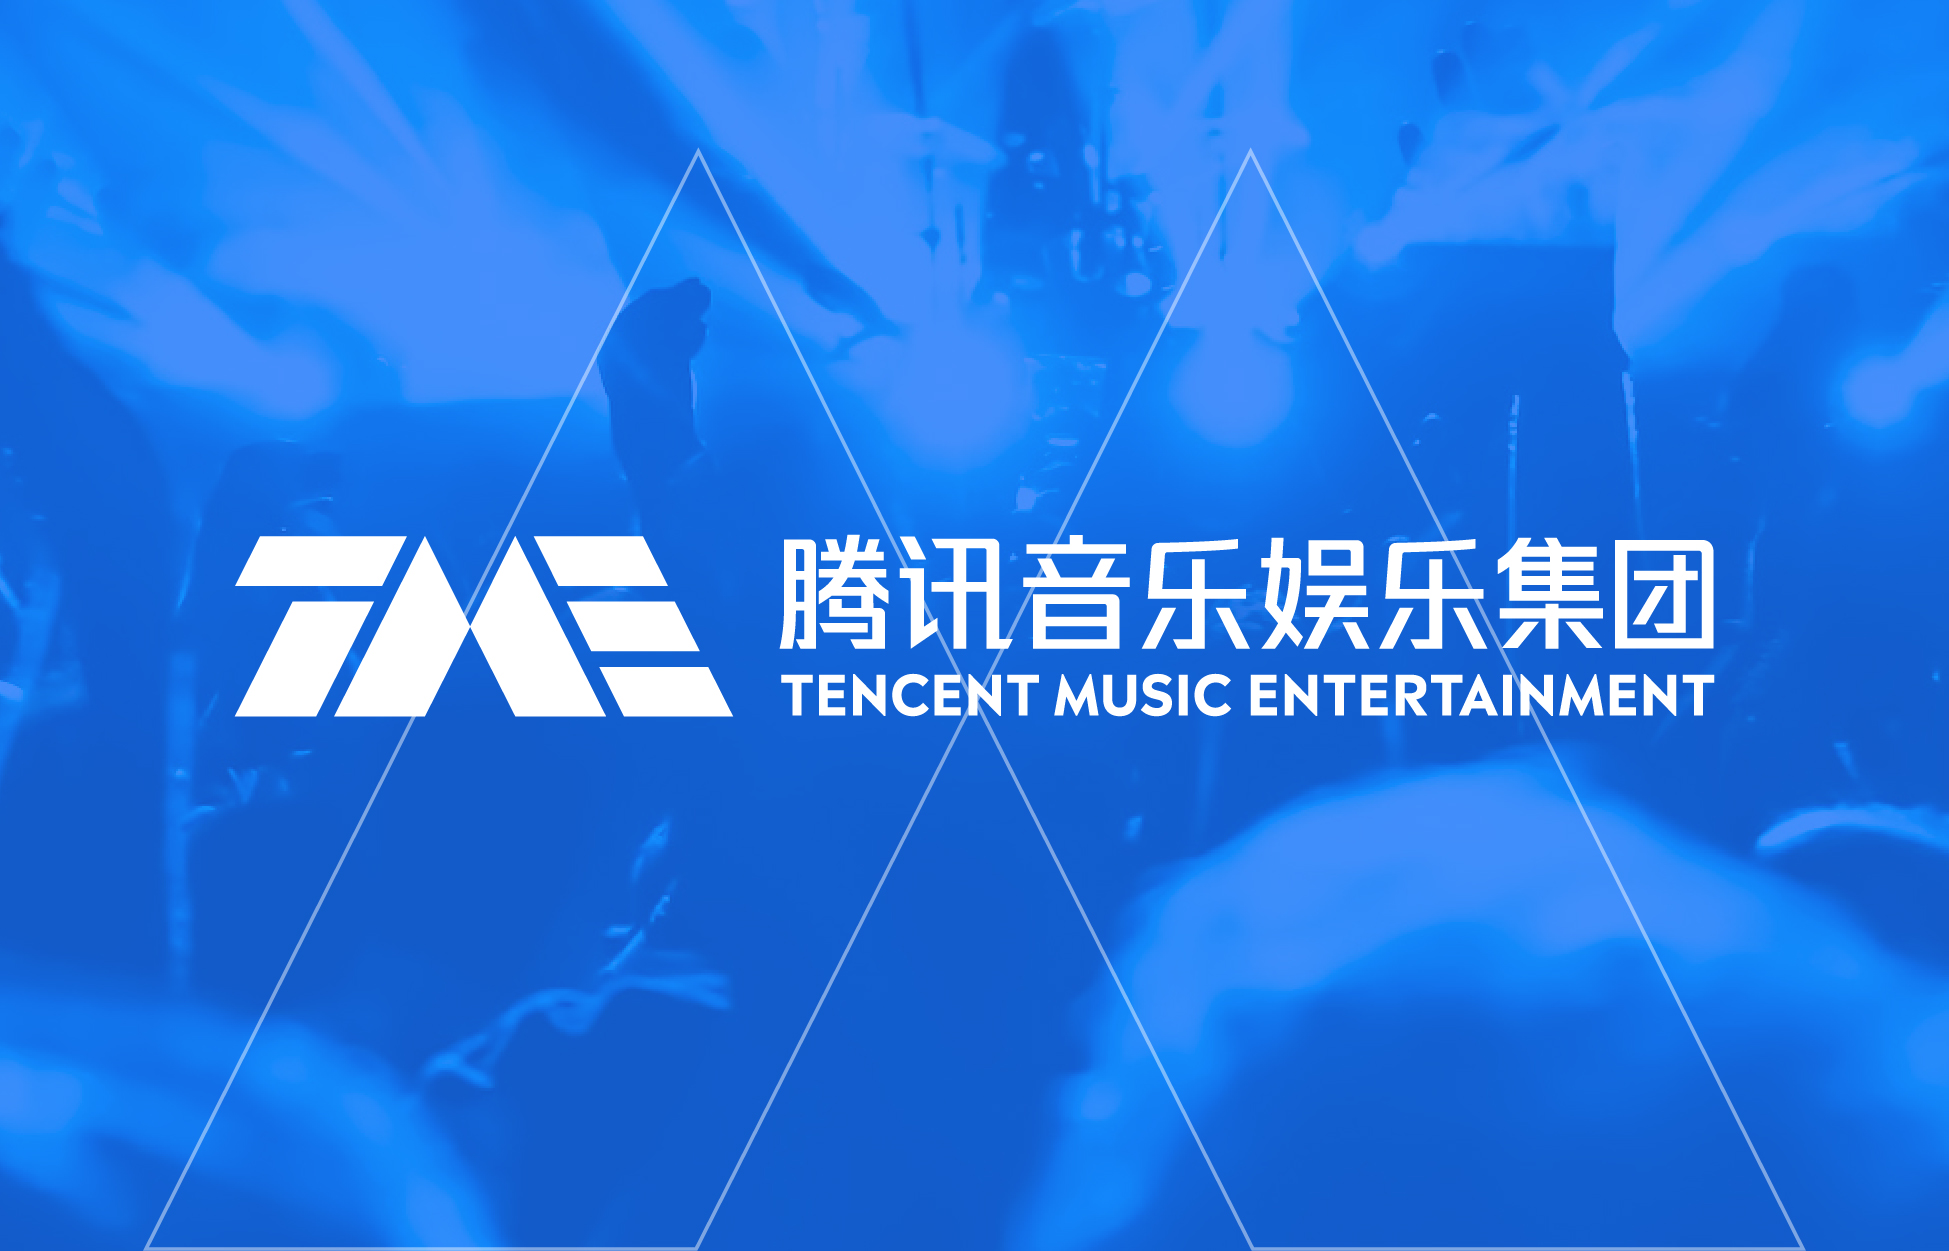 腾讯音乐娱乐集团宣布董事会及管理层调整